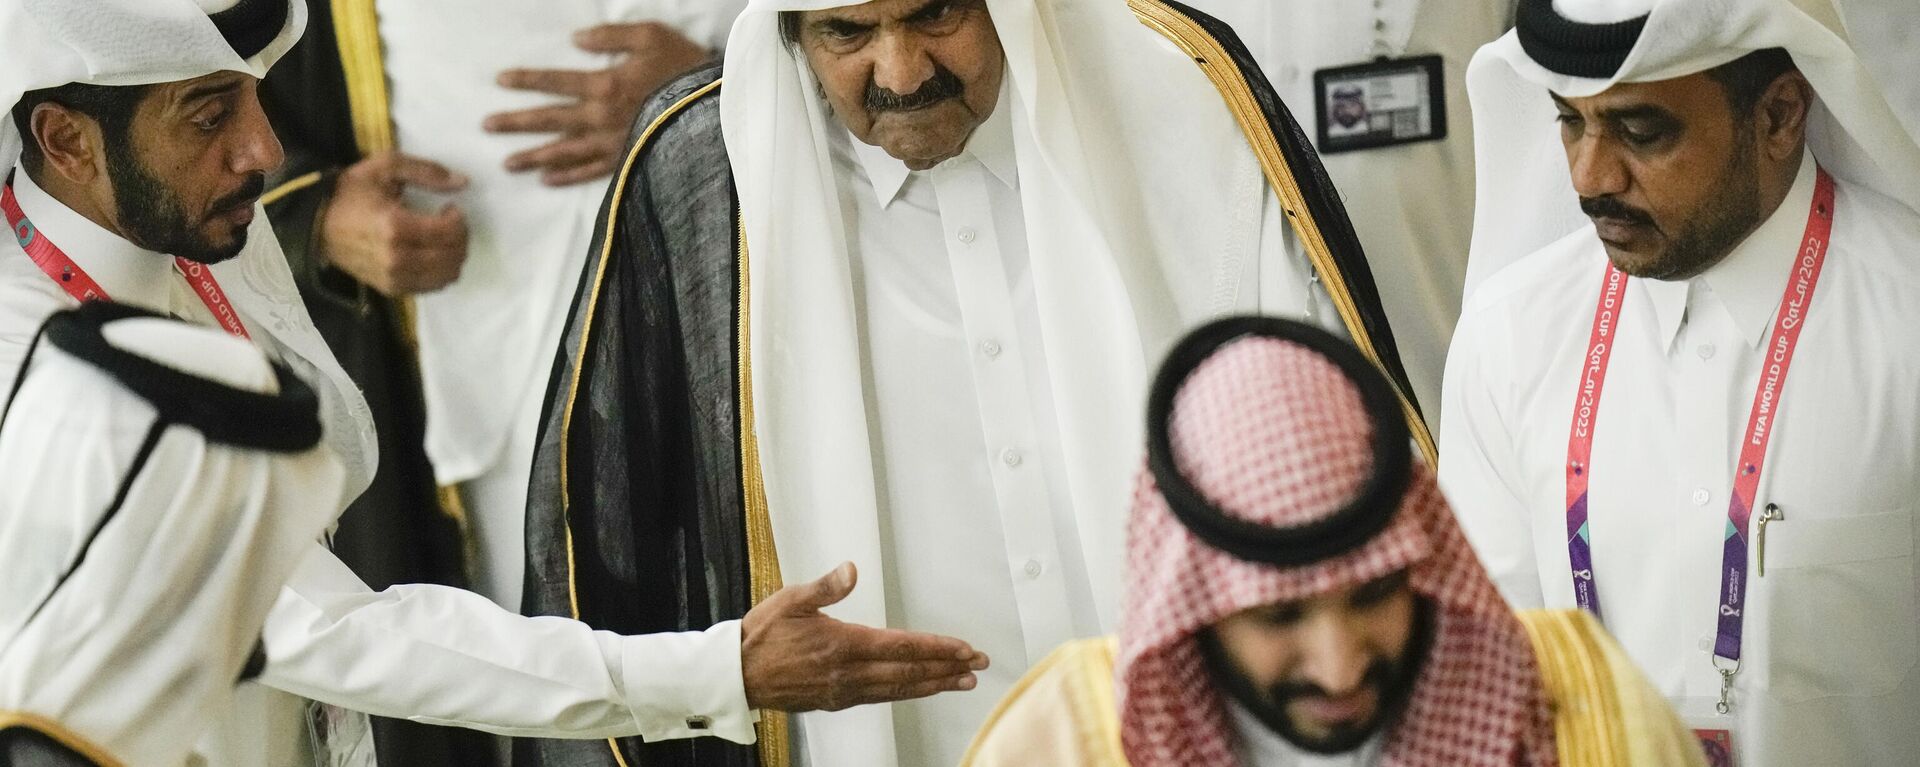 O ex-emir do Qatar Sheikh Hamad bin Khalifa Al Thani, centro, chega antes do início da Copa do Mundo, partida de futebol do grupo A entre Qatar e Equador no Al Bayt Stadium em Al Khor, Catar, 20 de novembro de 2022 - Sputnik Brasil, 1920, 03.12.2022